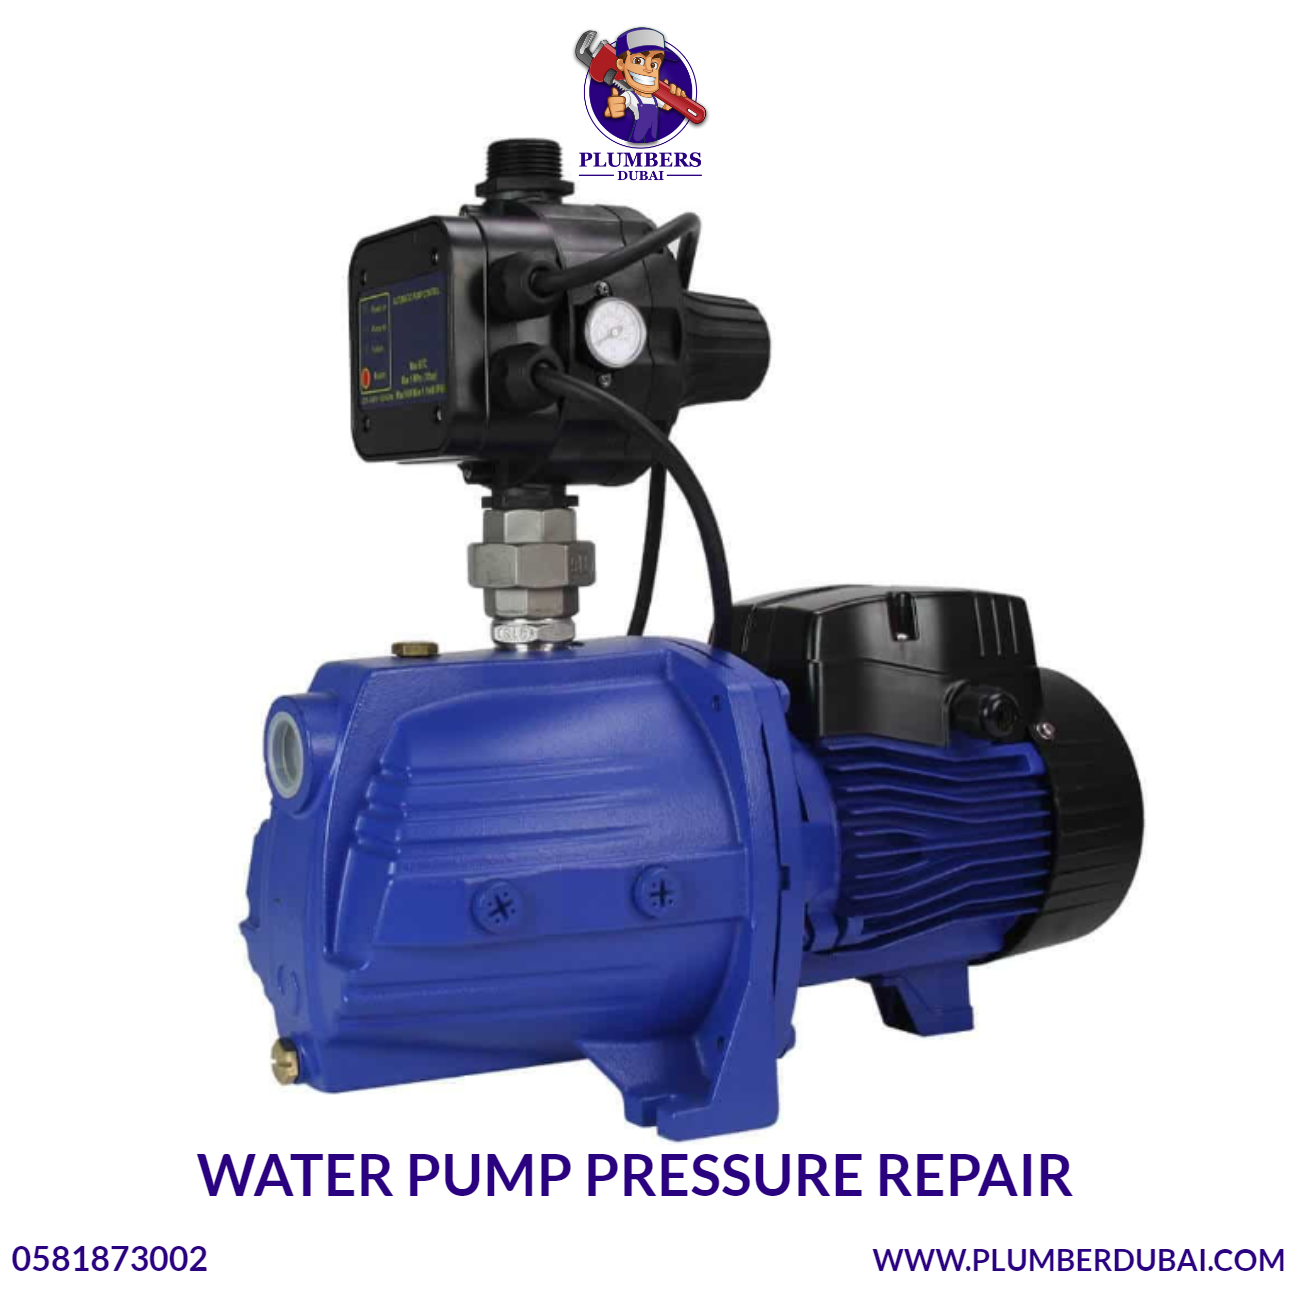 Water Pump Pressure Repair